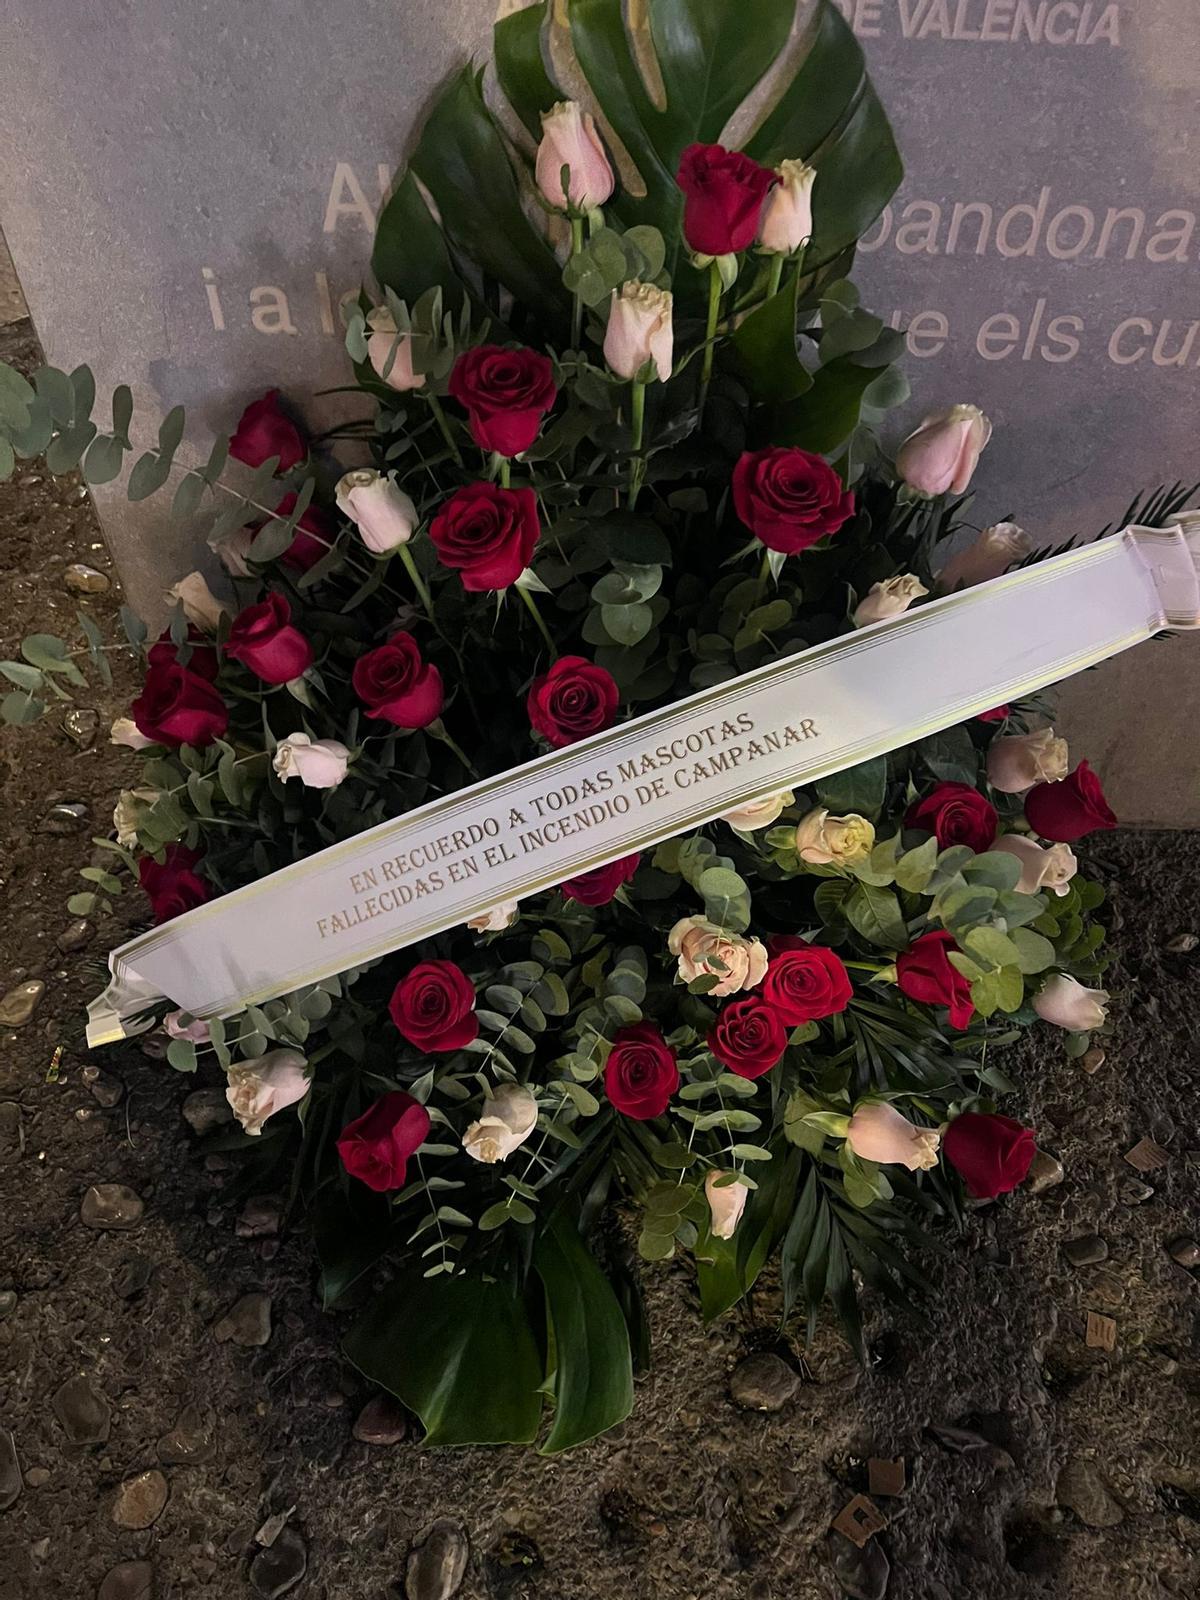 Ramo de flores depositado en recuerdo a los animales fallecidos en el incendio de Campanar.